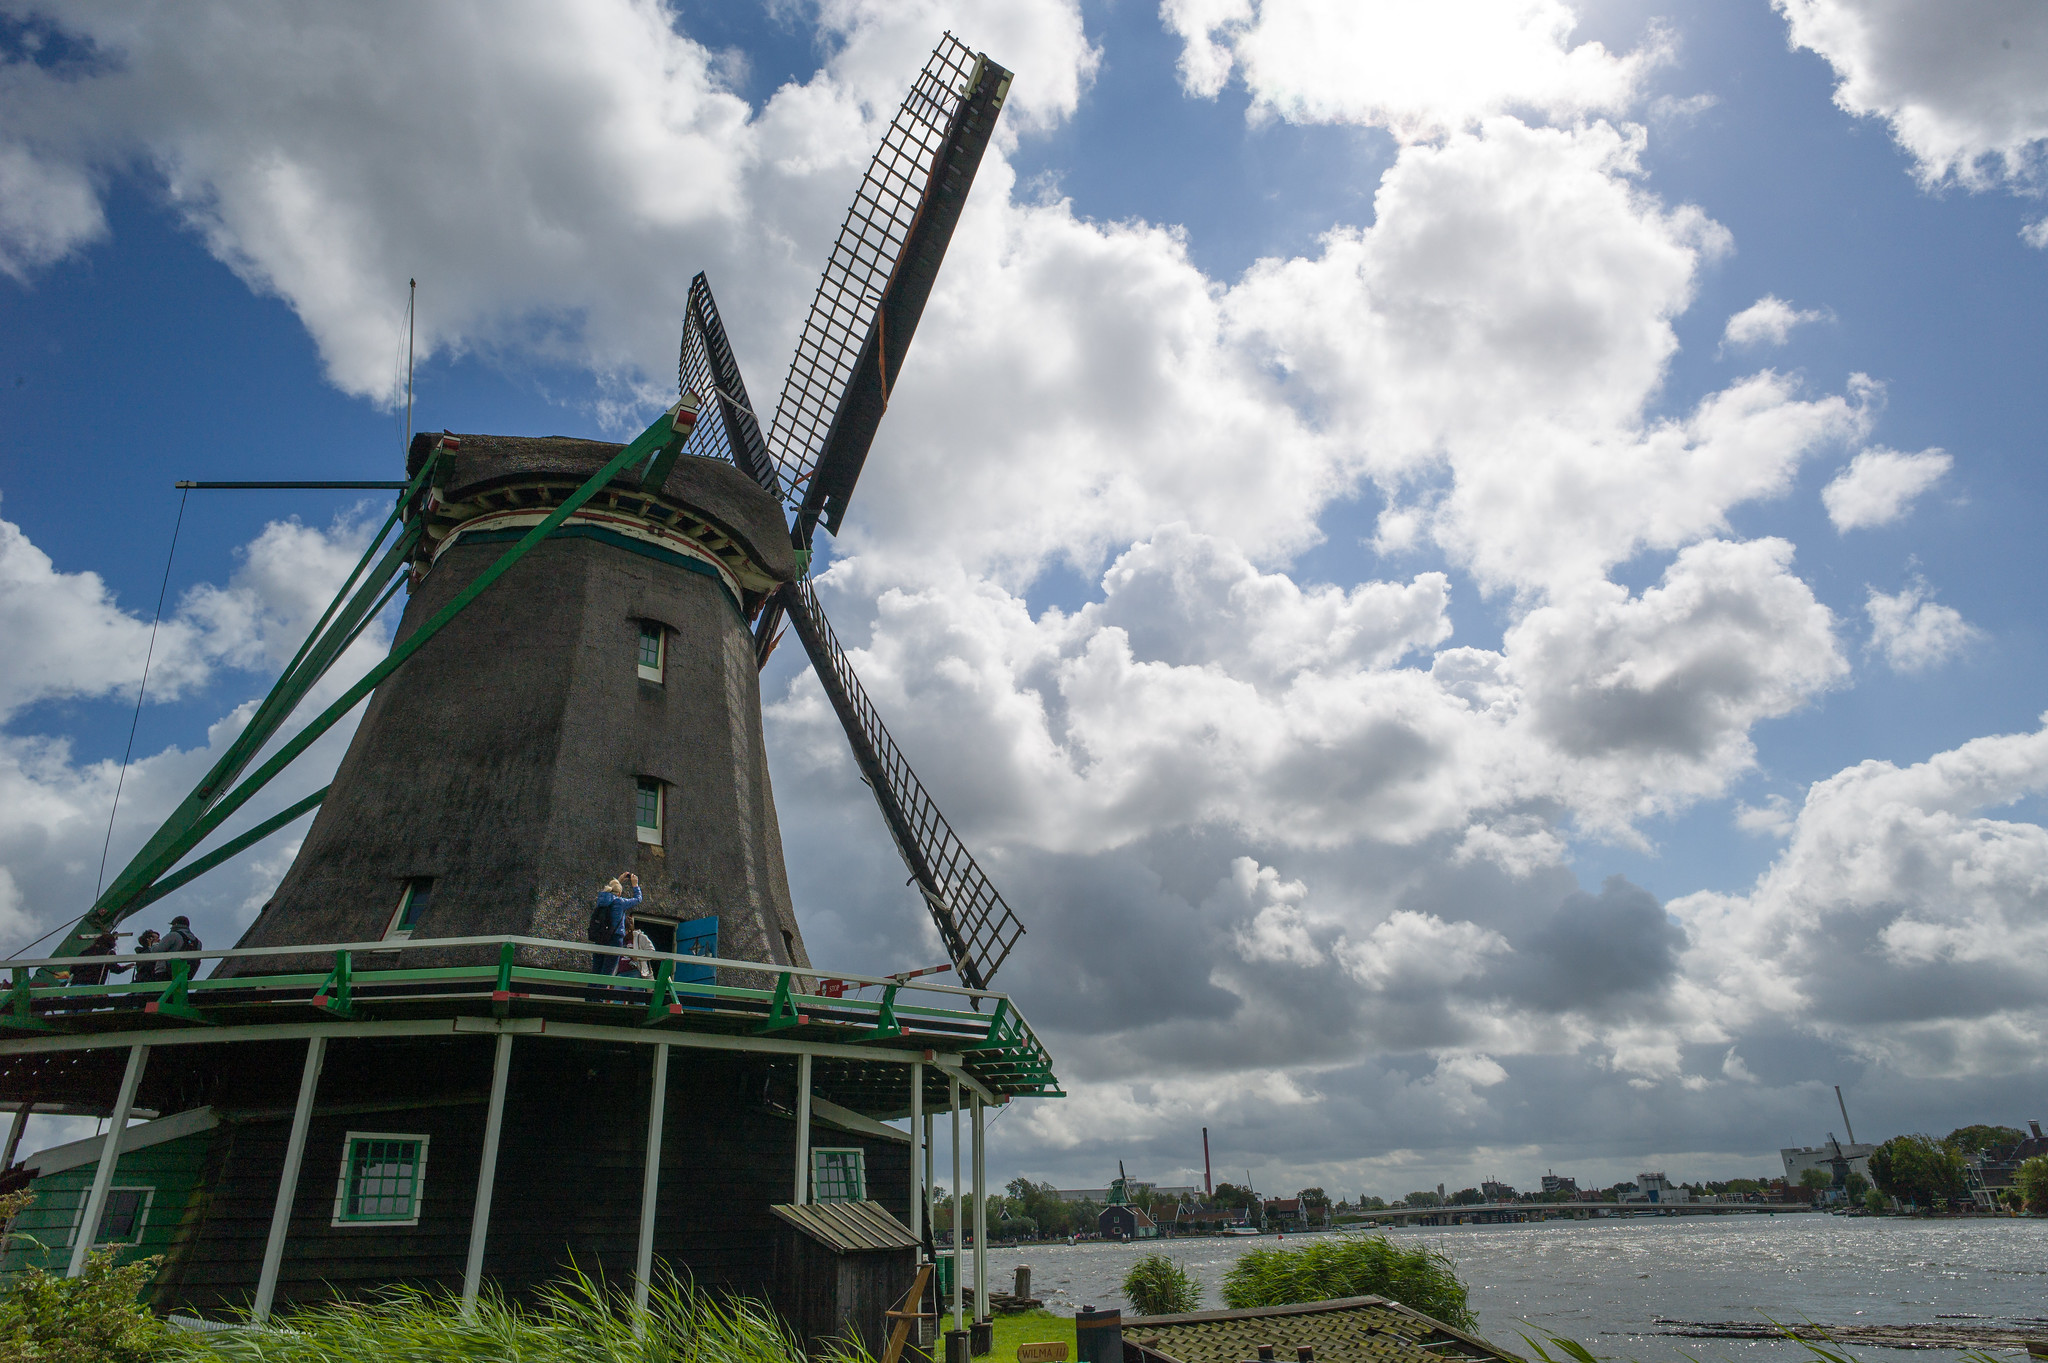 Zaanse Schans, Netherlands 荷蘭風車村